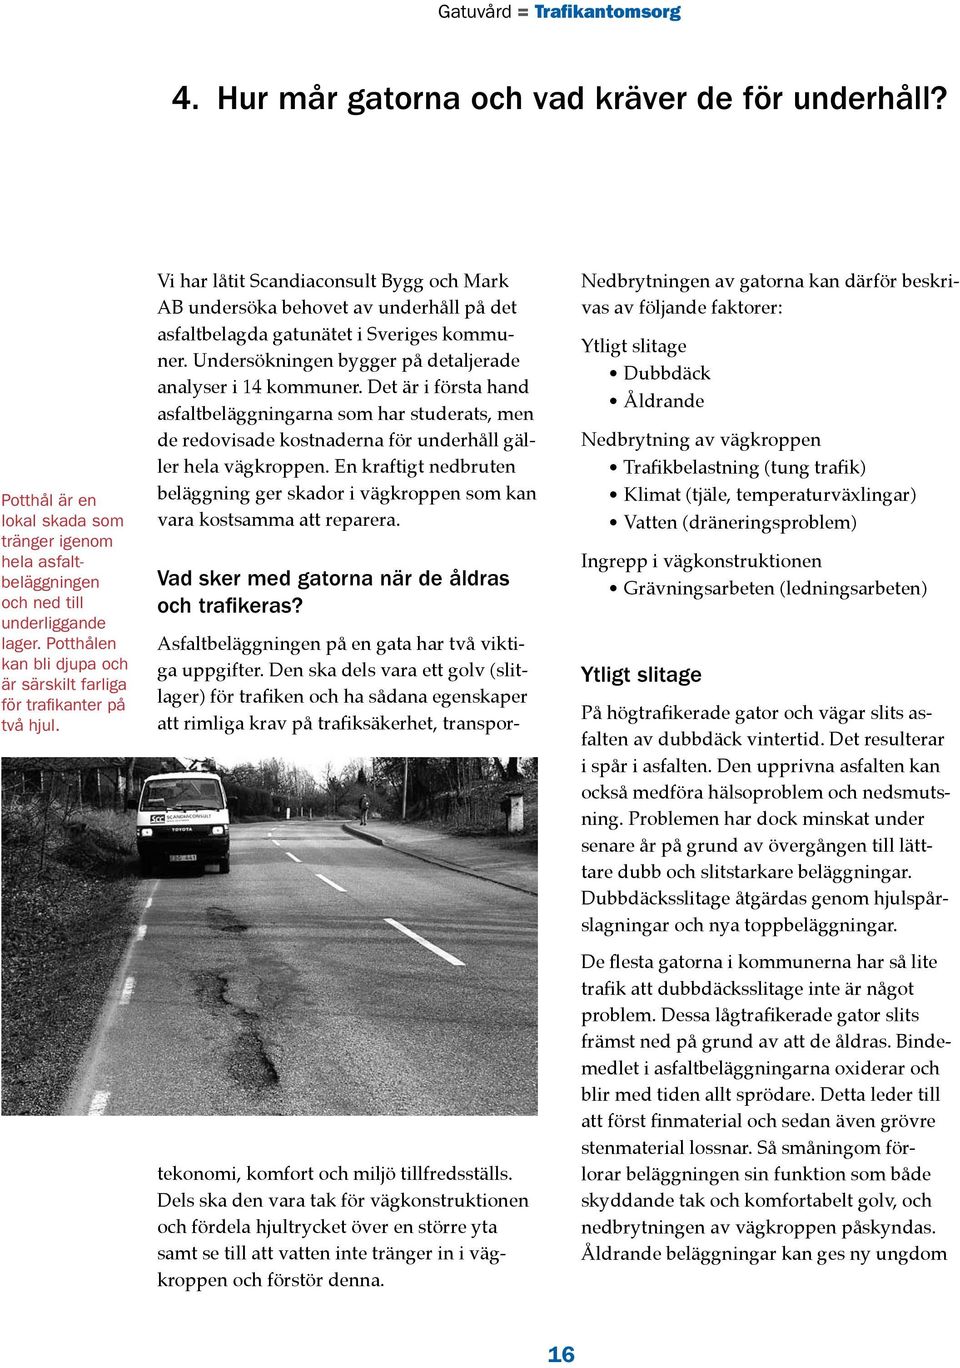 Vi har låtit Scandiaconsult Bygg och Mark AB undersöka behovet av underhåll på det asfaltbelagda gatunätet i Sveriges kommuner. Undersökningen bygger på detaljerade analyser i 14 kommuner.